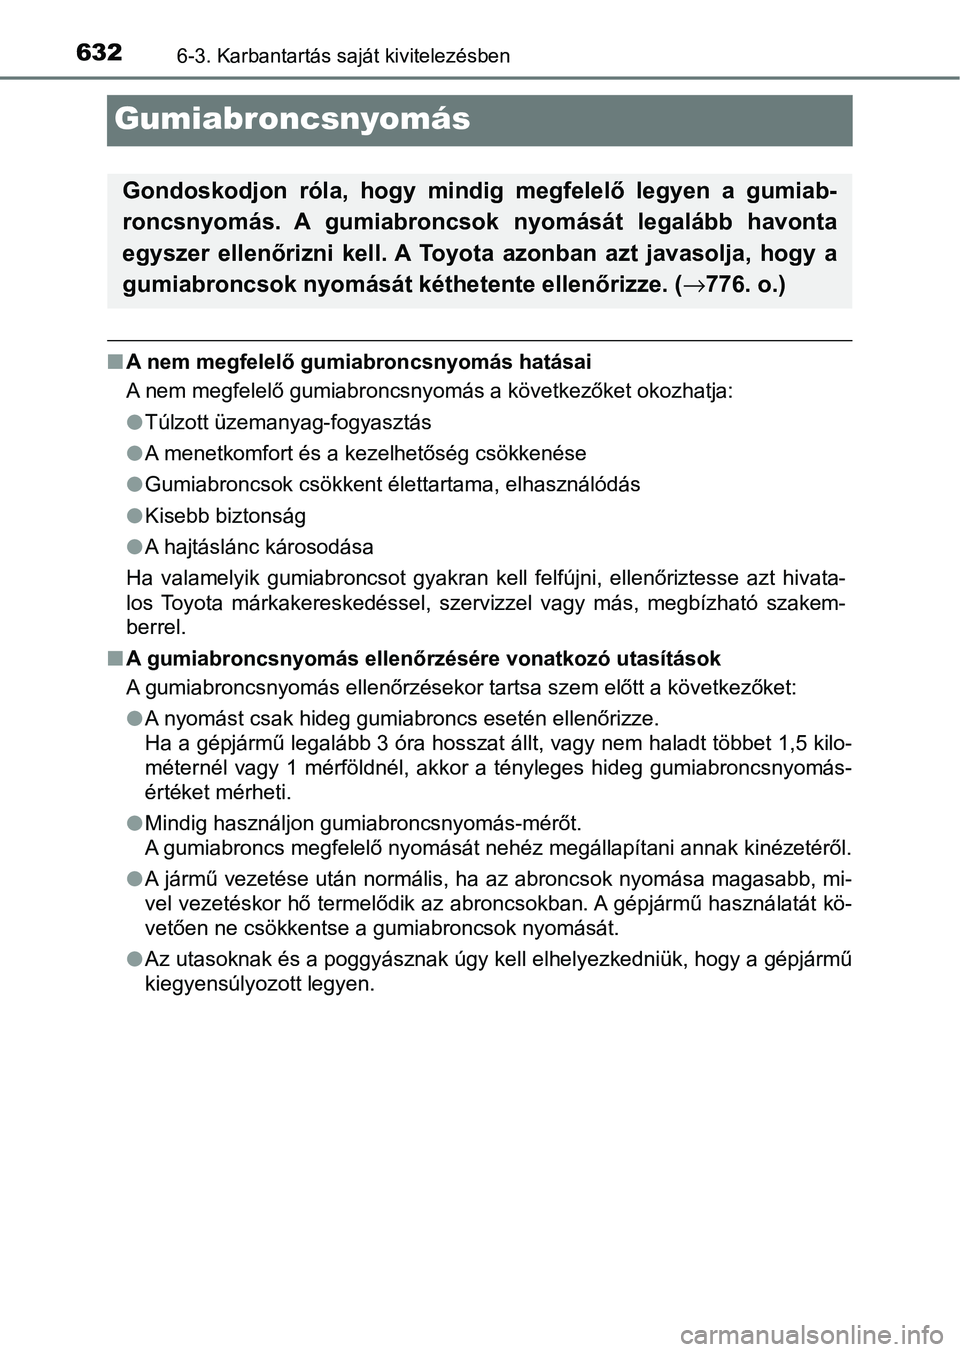 TOYOTA C-HR 2022  Kezelési útmutató (in Hungarian) 6326-3. Karbantartás saját kivitelezésben
Gumiabroncsnyomás
nA nem megfelelő gumiabroncsnyomás hatásai
A nem megfelelő gumiabroncsnyomás a következőket okozhatja:
lTúlzott üzemanyag-fogya